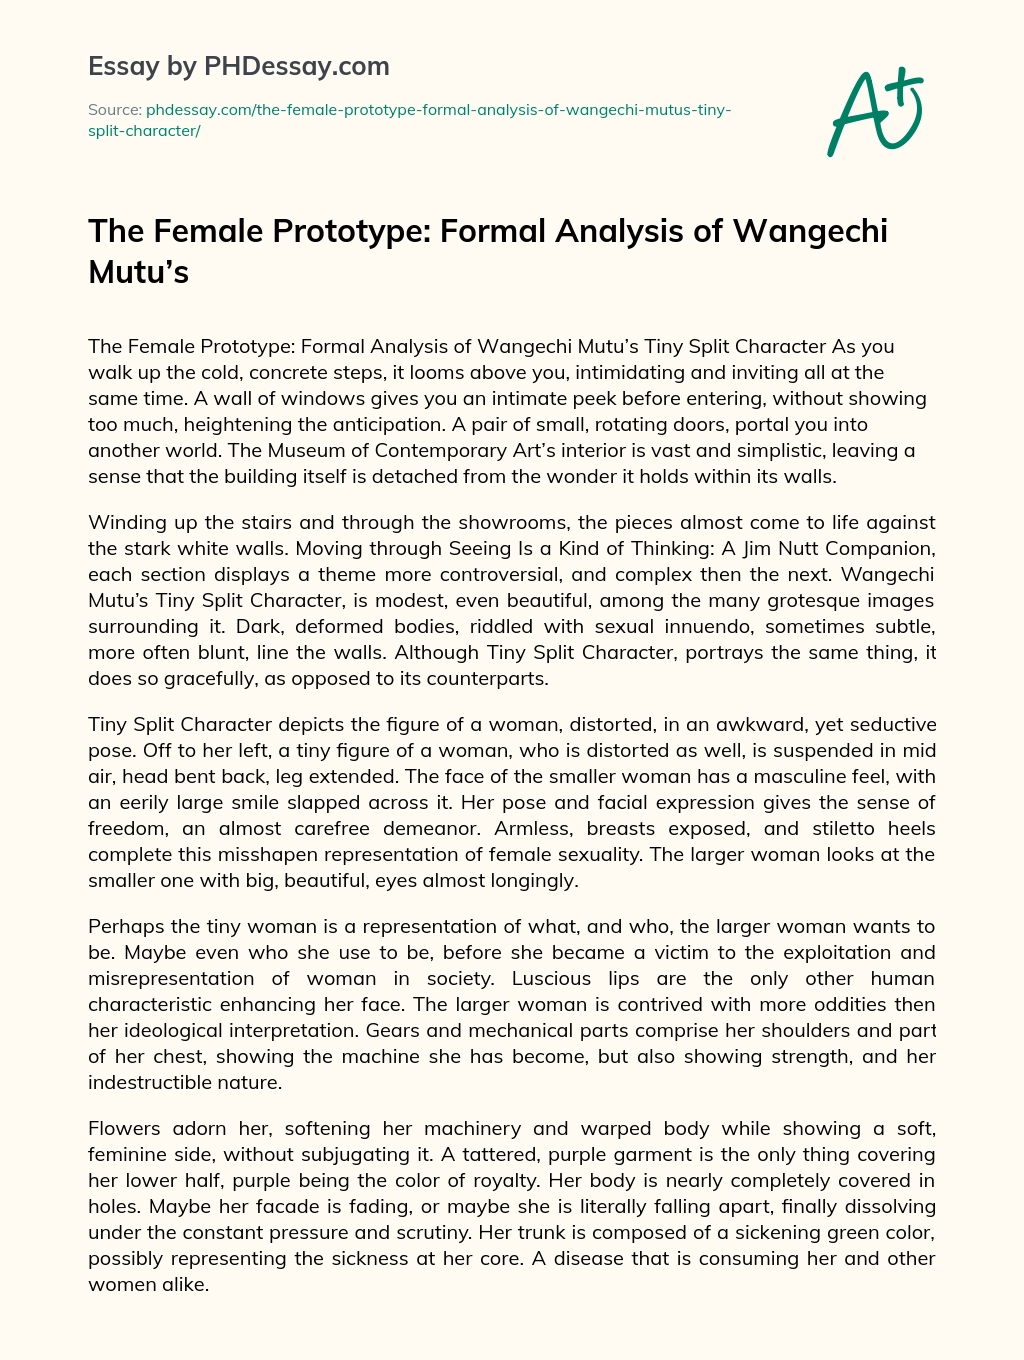 The Female Prototype: Formal Analysis of Wangechi Mutu’s essay